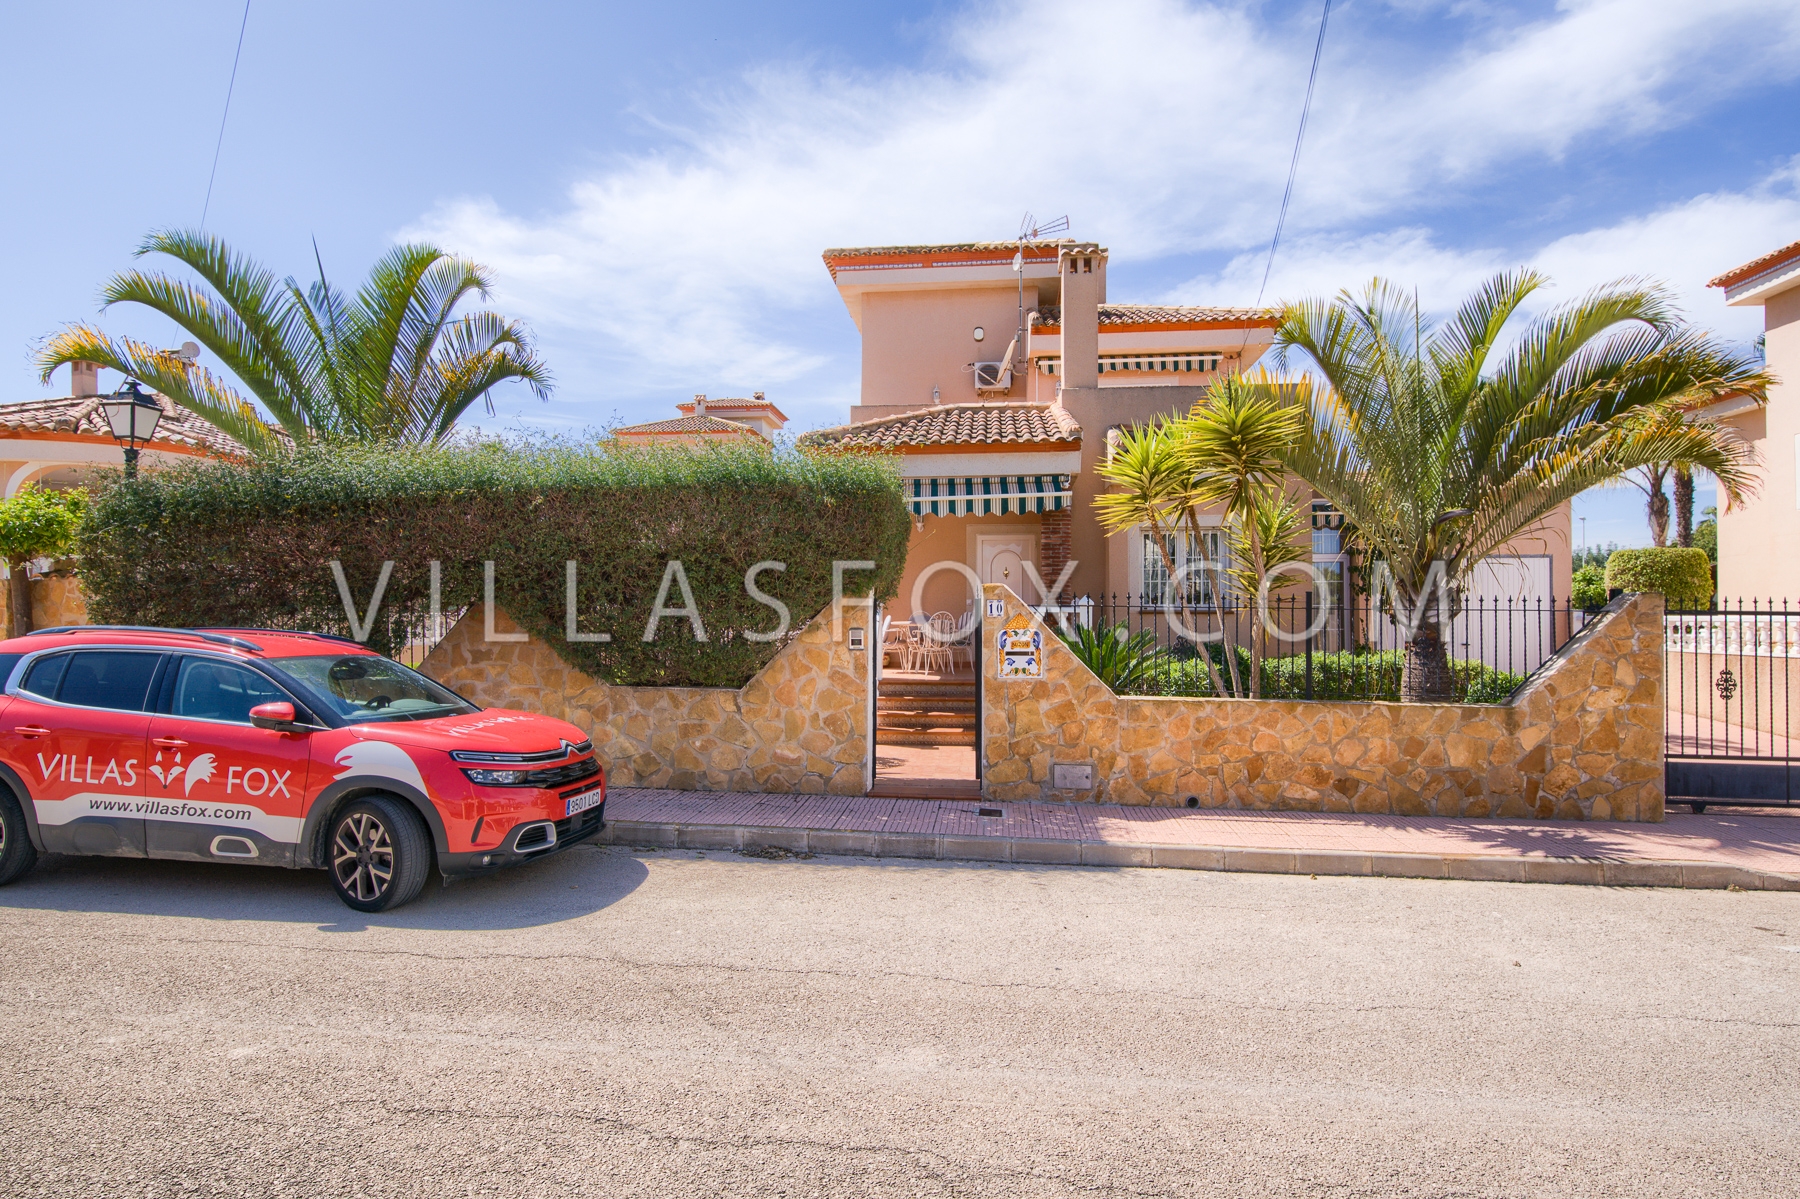 Torrestrella villa til salg, 3 soveværelser, privat pool, garage